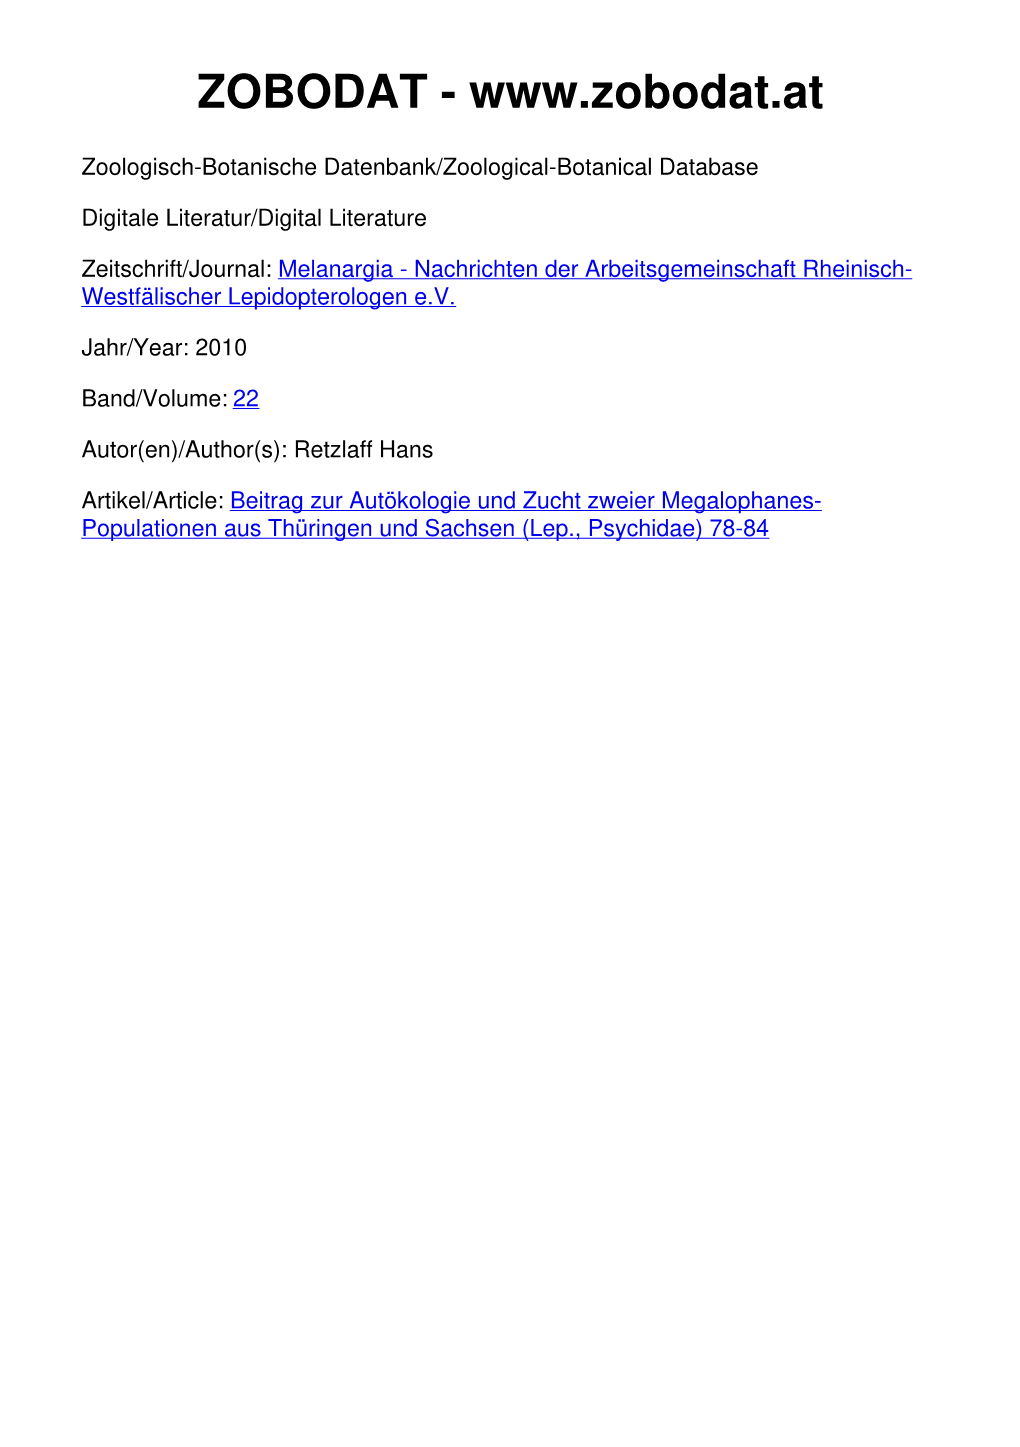 Beitrag Zur Autökologie Und Zucht Zweier Megalophanes- Populationen Aus Thüringen Und Sachsen (Lep., Psychidae) 78-84 Melanargia, 22 (2): 78-84 Leverkusen, 1.7.2010